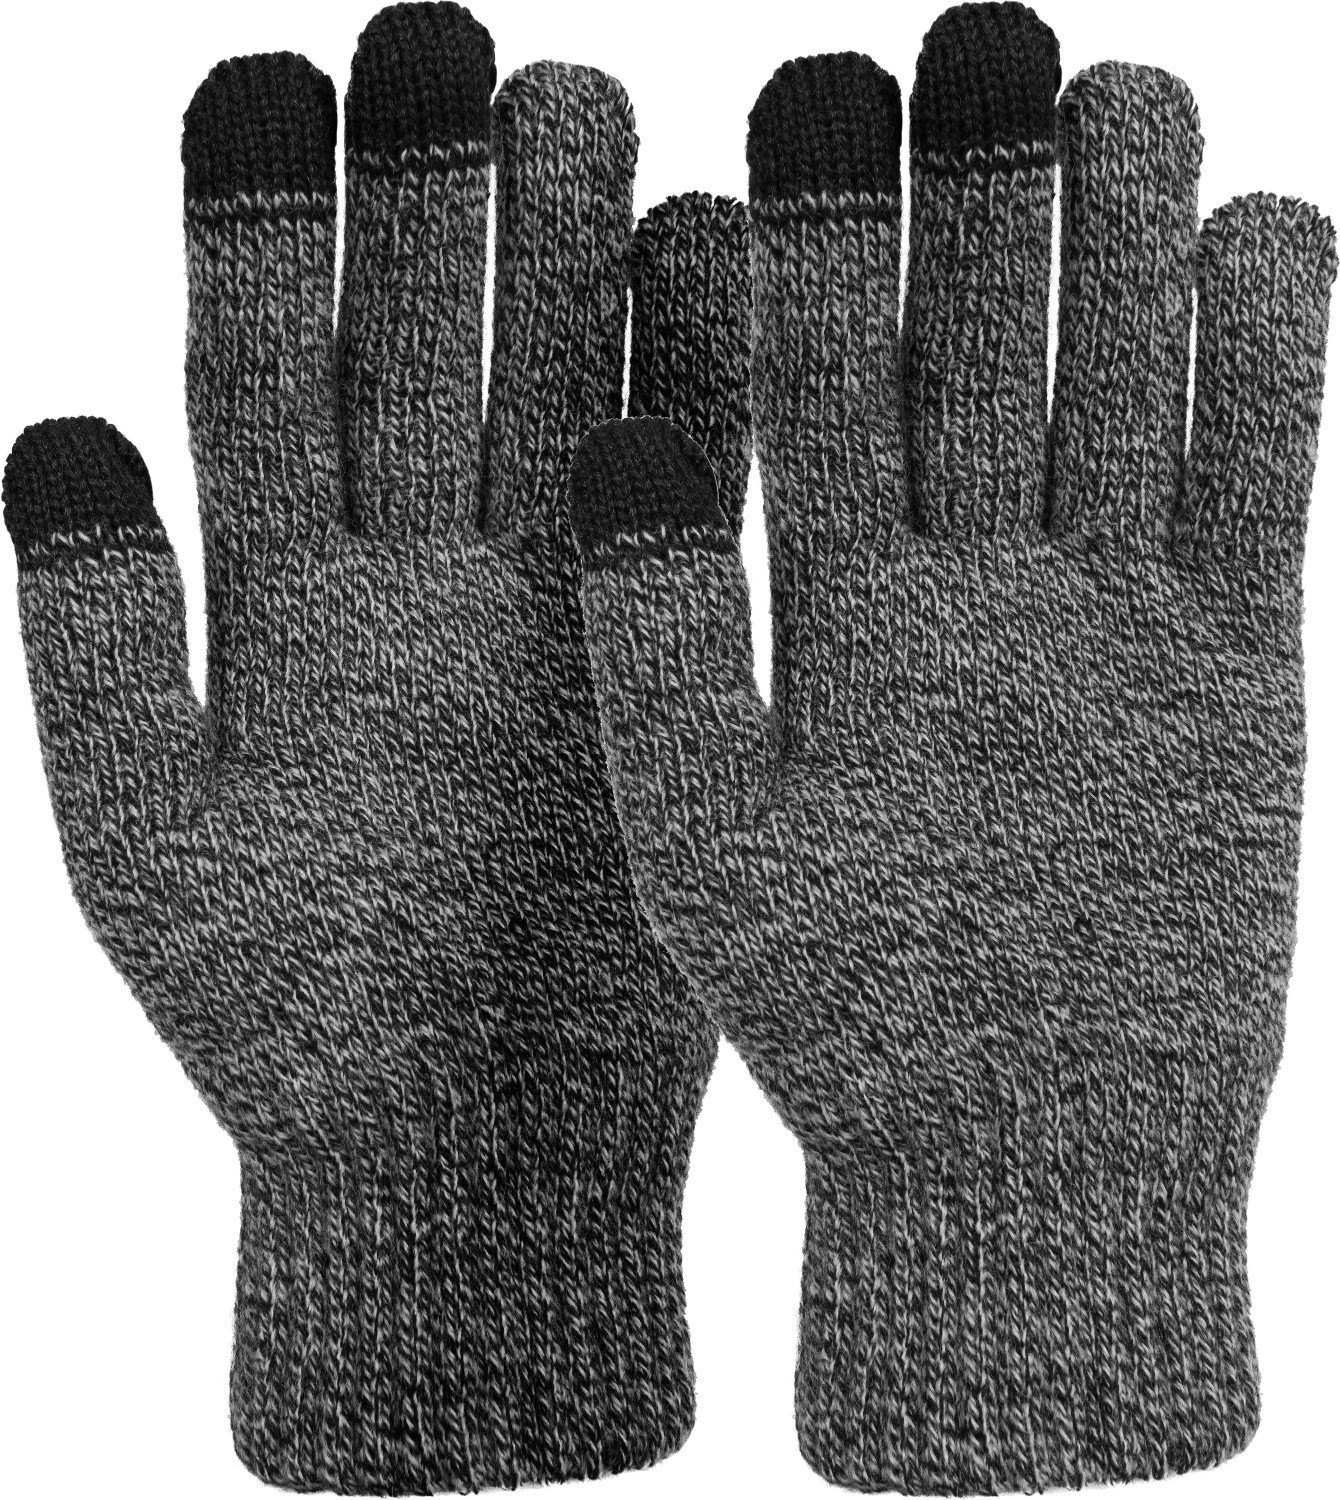 styleBREAKER Strickhandschuhe Touchscreen Strick Handschuhe mit Karo Strickmuster Schwarz-Weiß